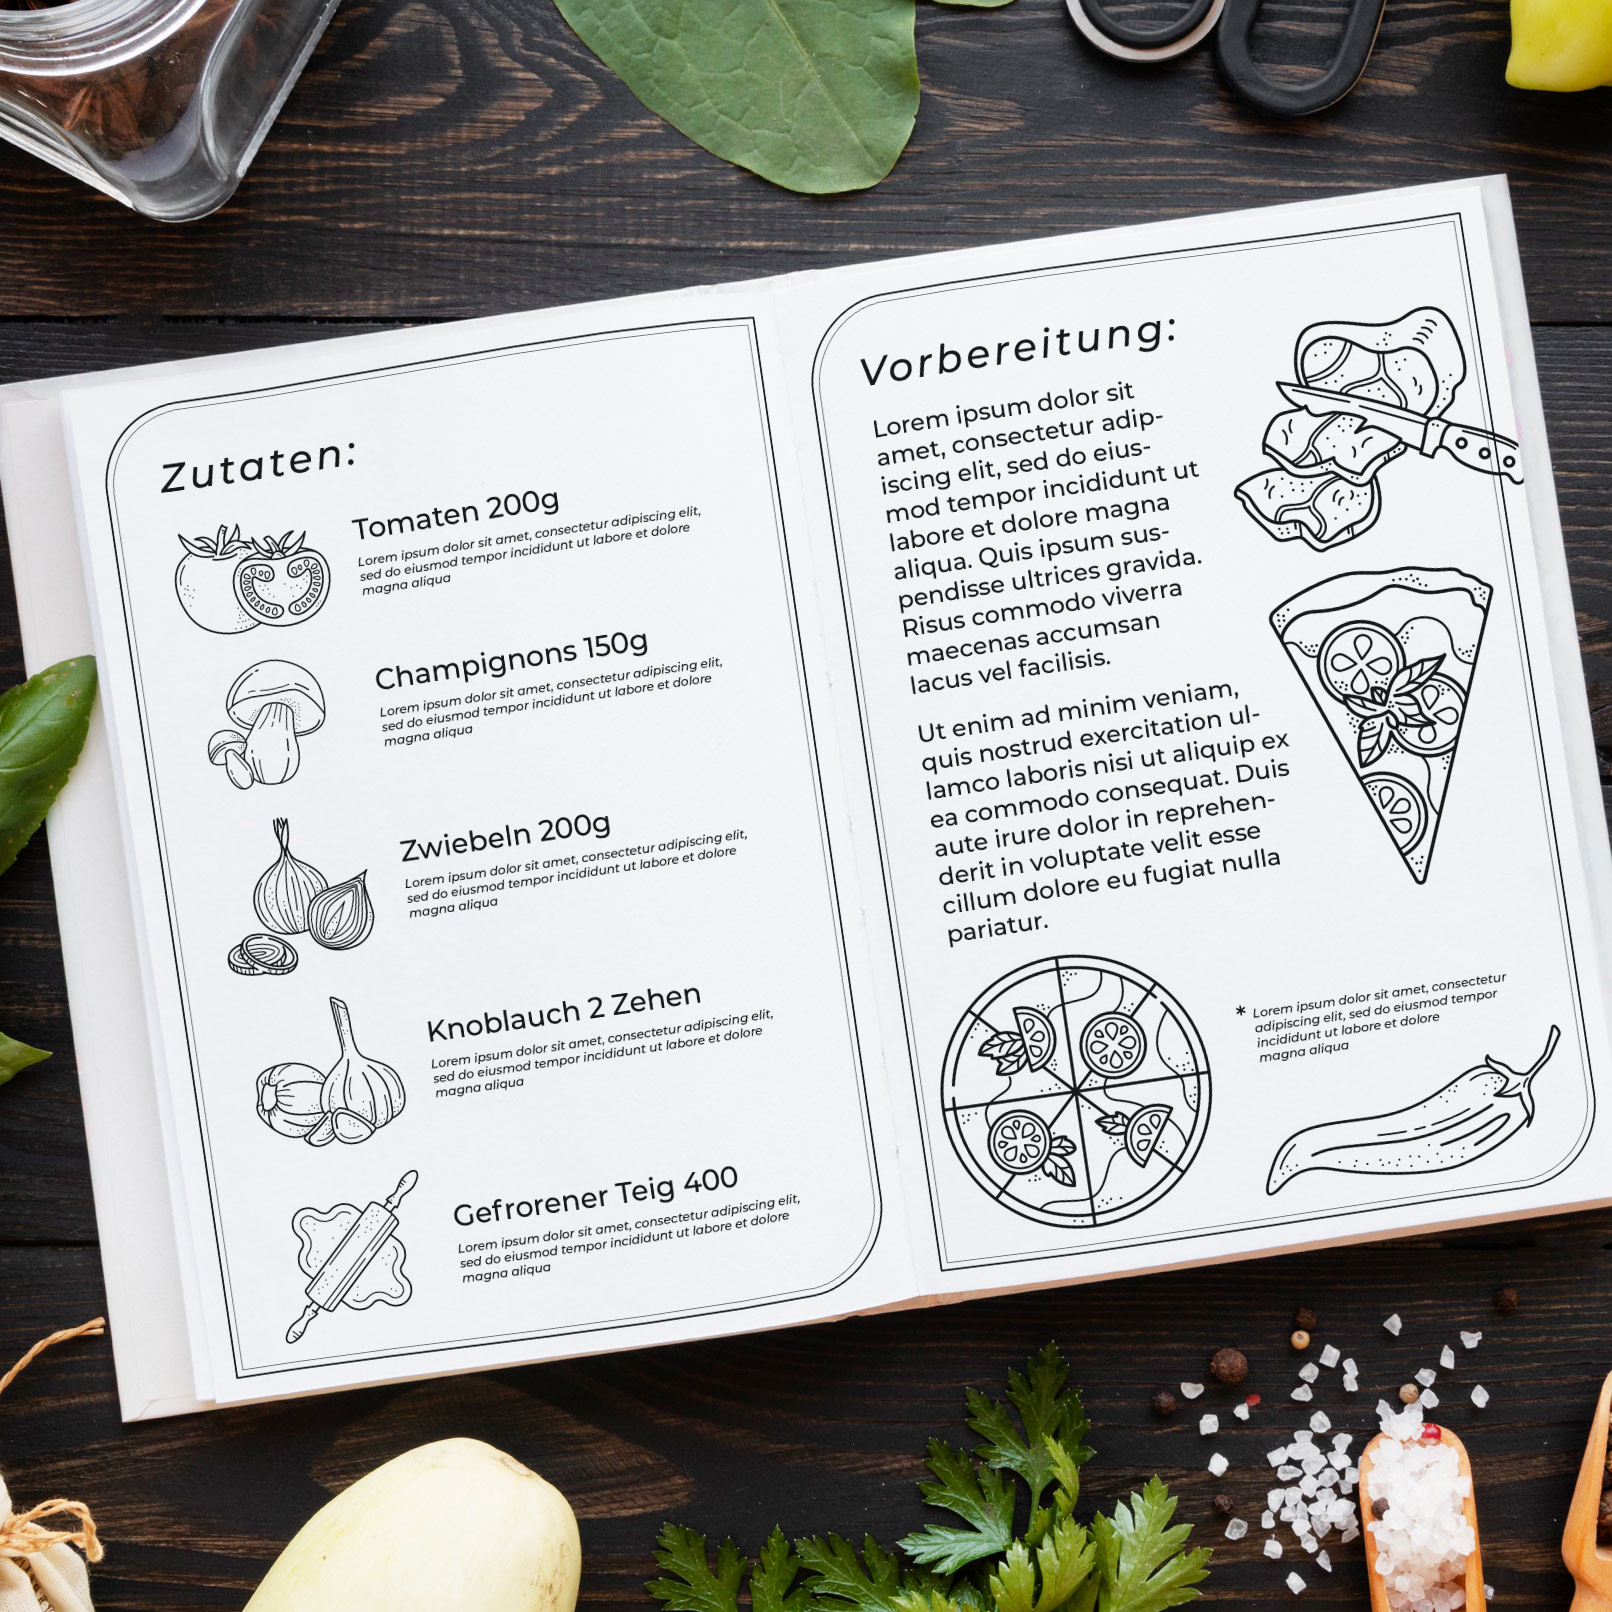 Rezept- und Kochbuch mit Food-Illustrationen